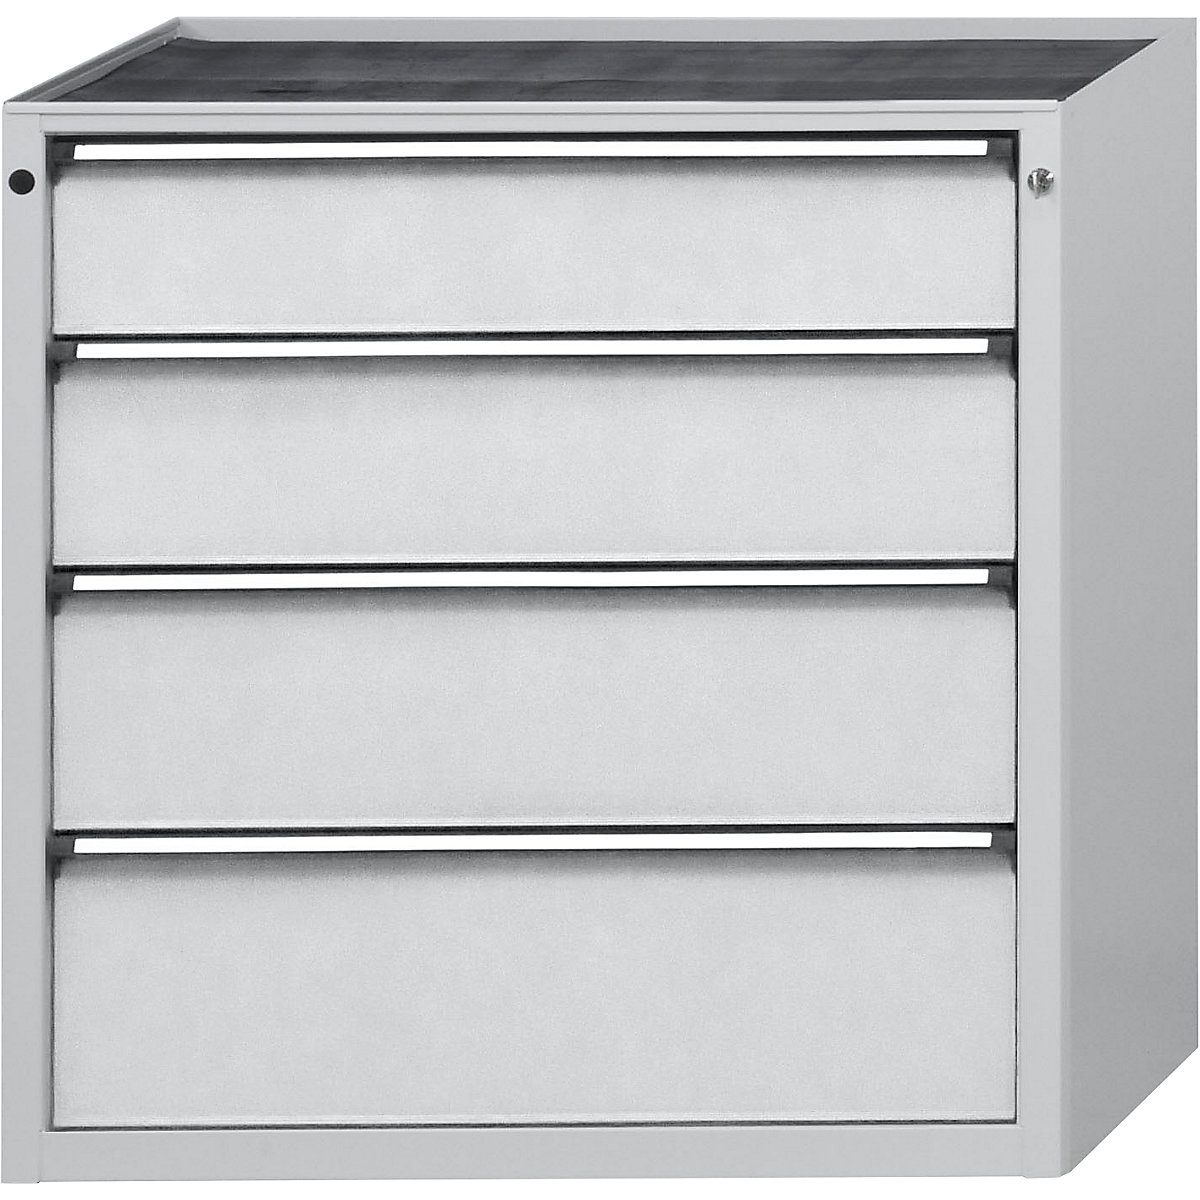 ANKE – Armoire à tiroirs, l x p 1060 x 675 mm, 4 tiroirs, hauteur 980 mm, façade gris clair